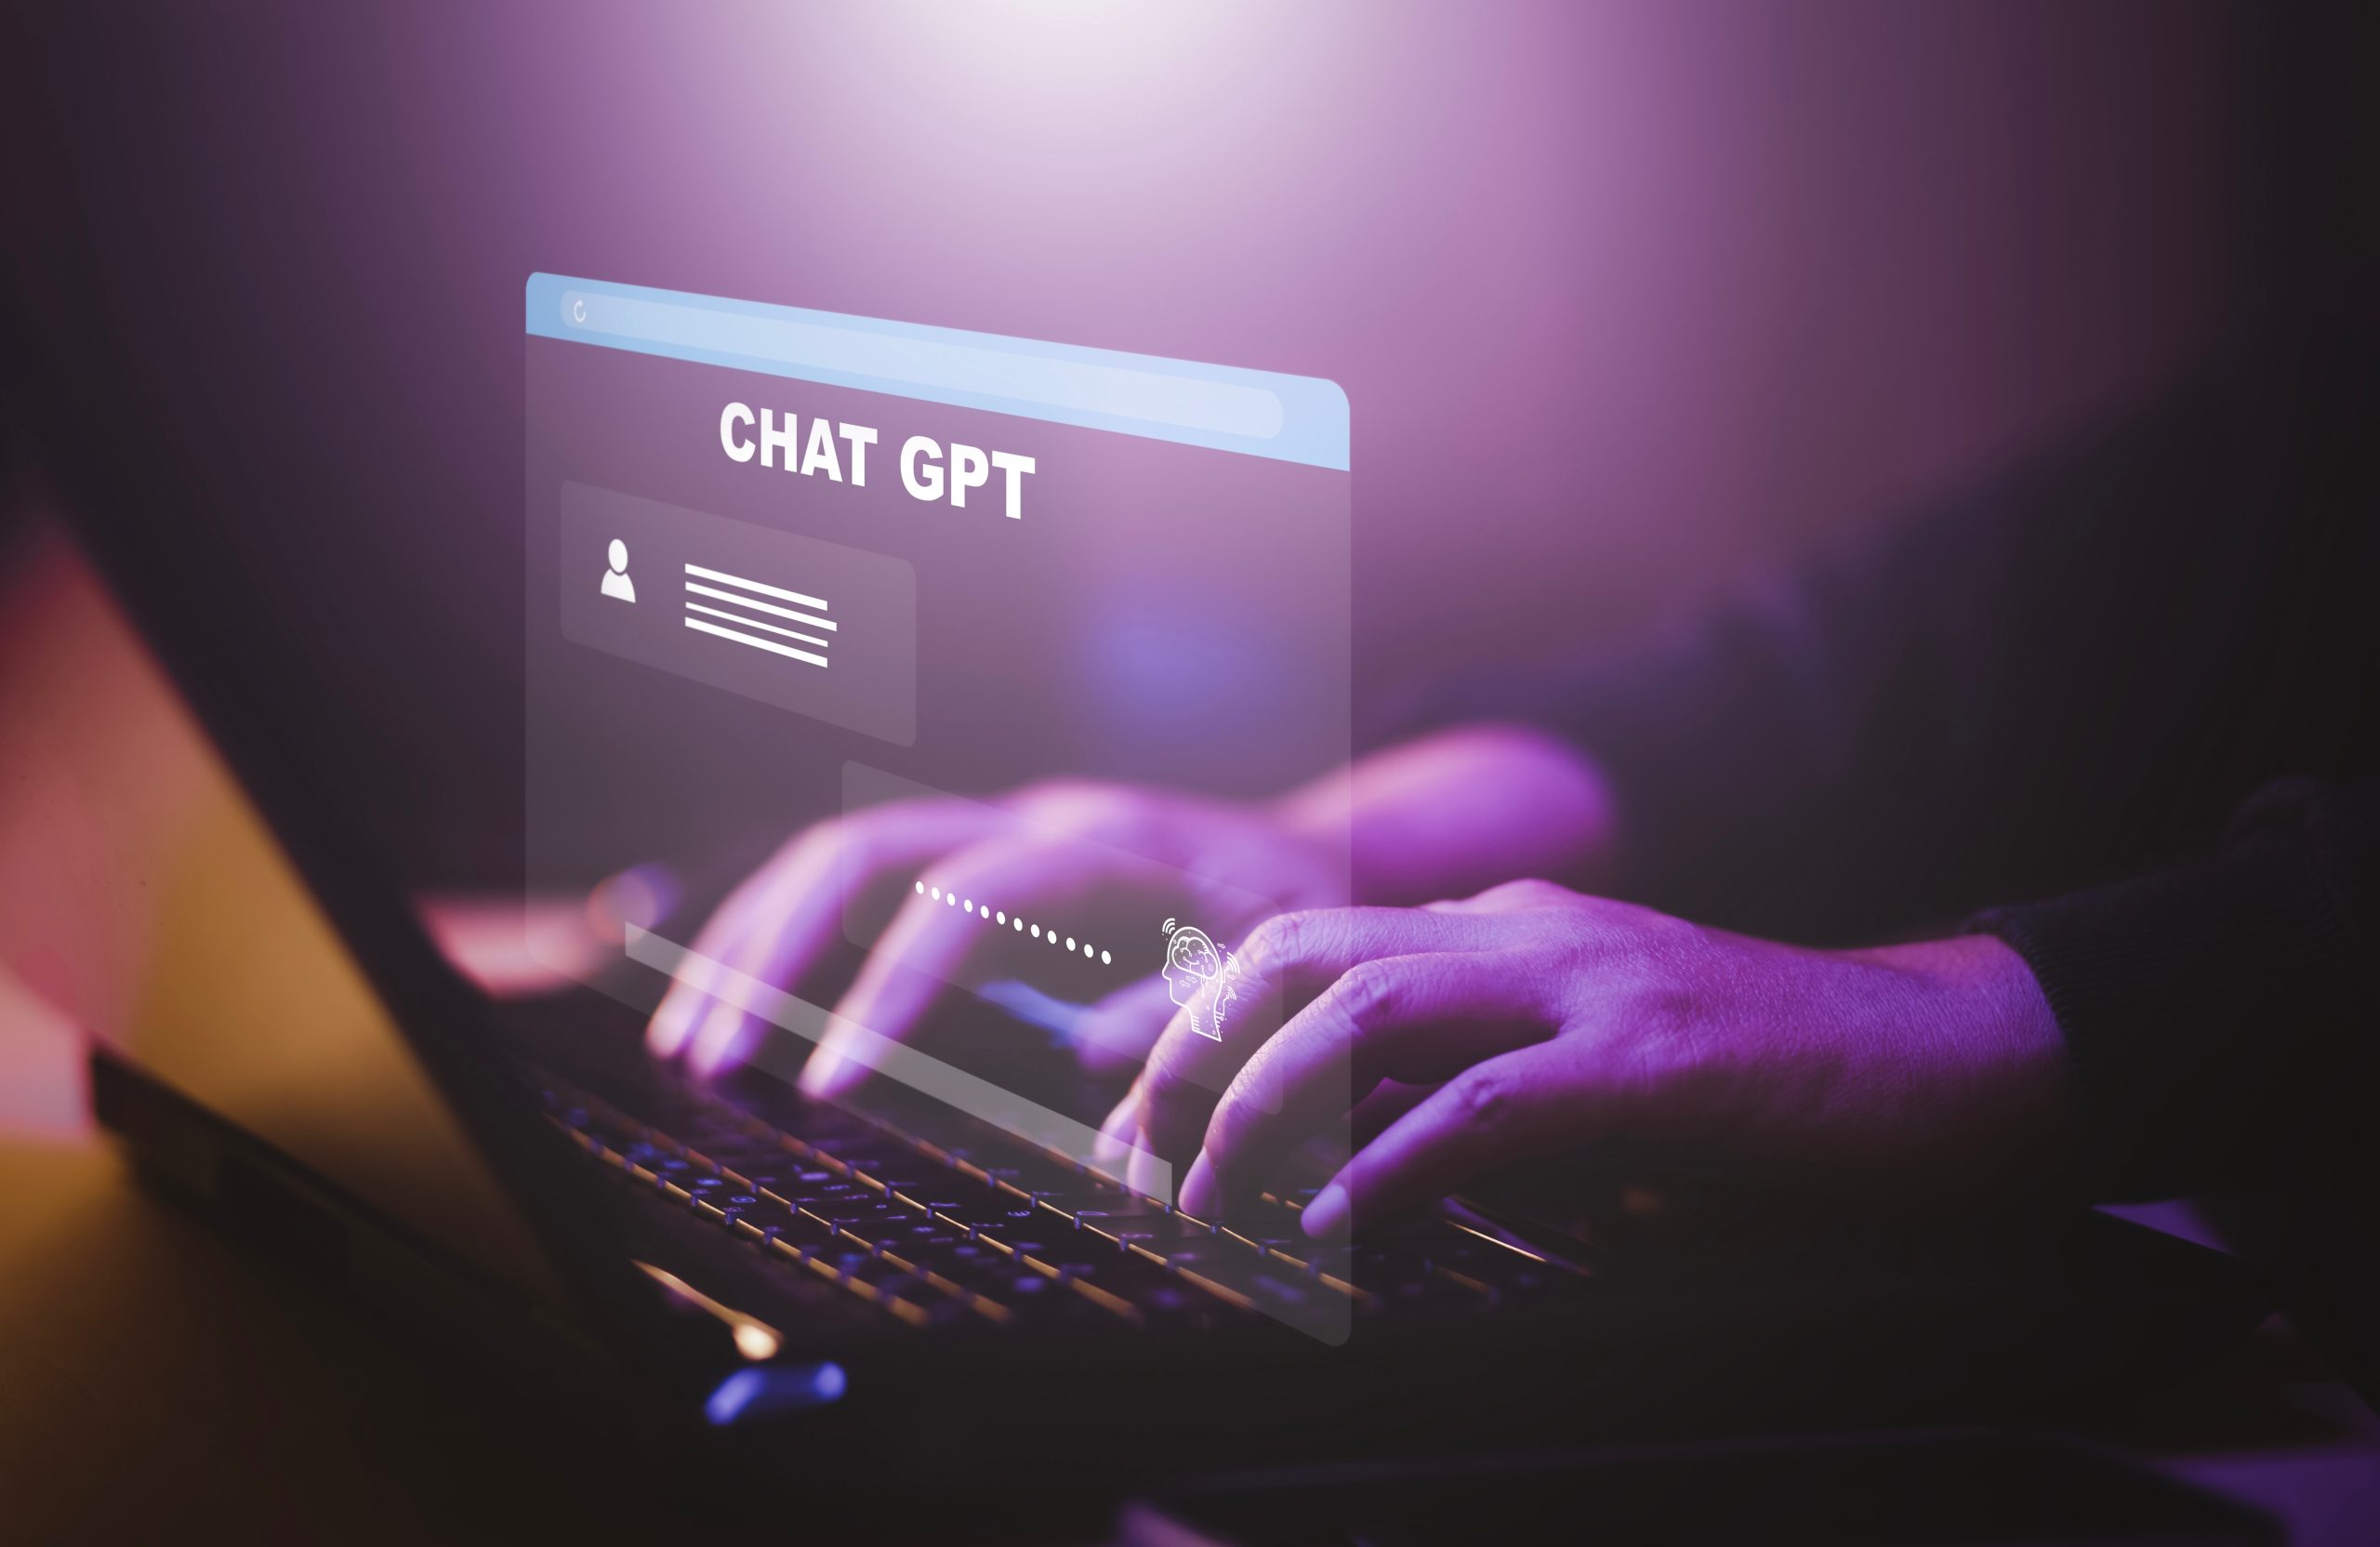 Imagem mostra um homem usando um teclado com um visor escrito "ChatGPT" à frente